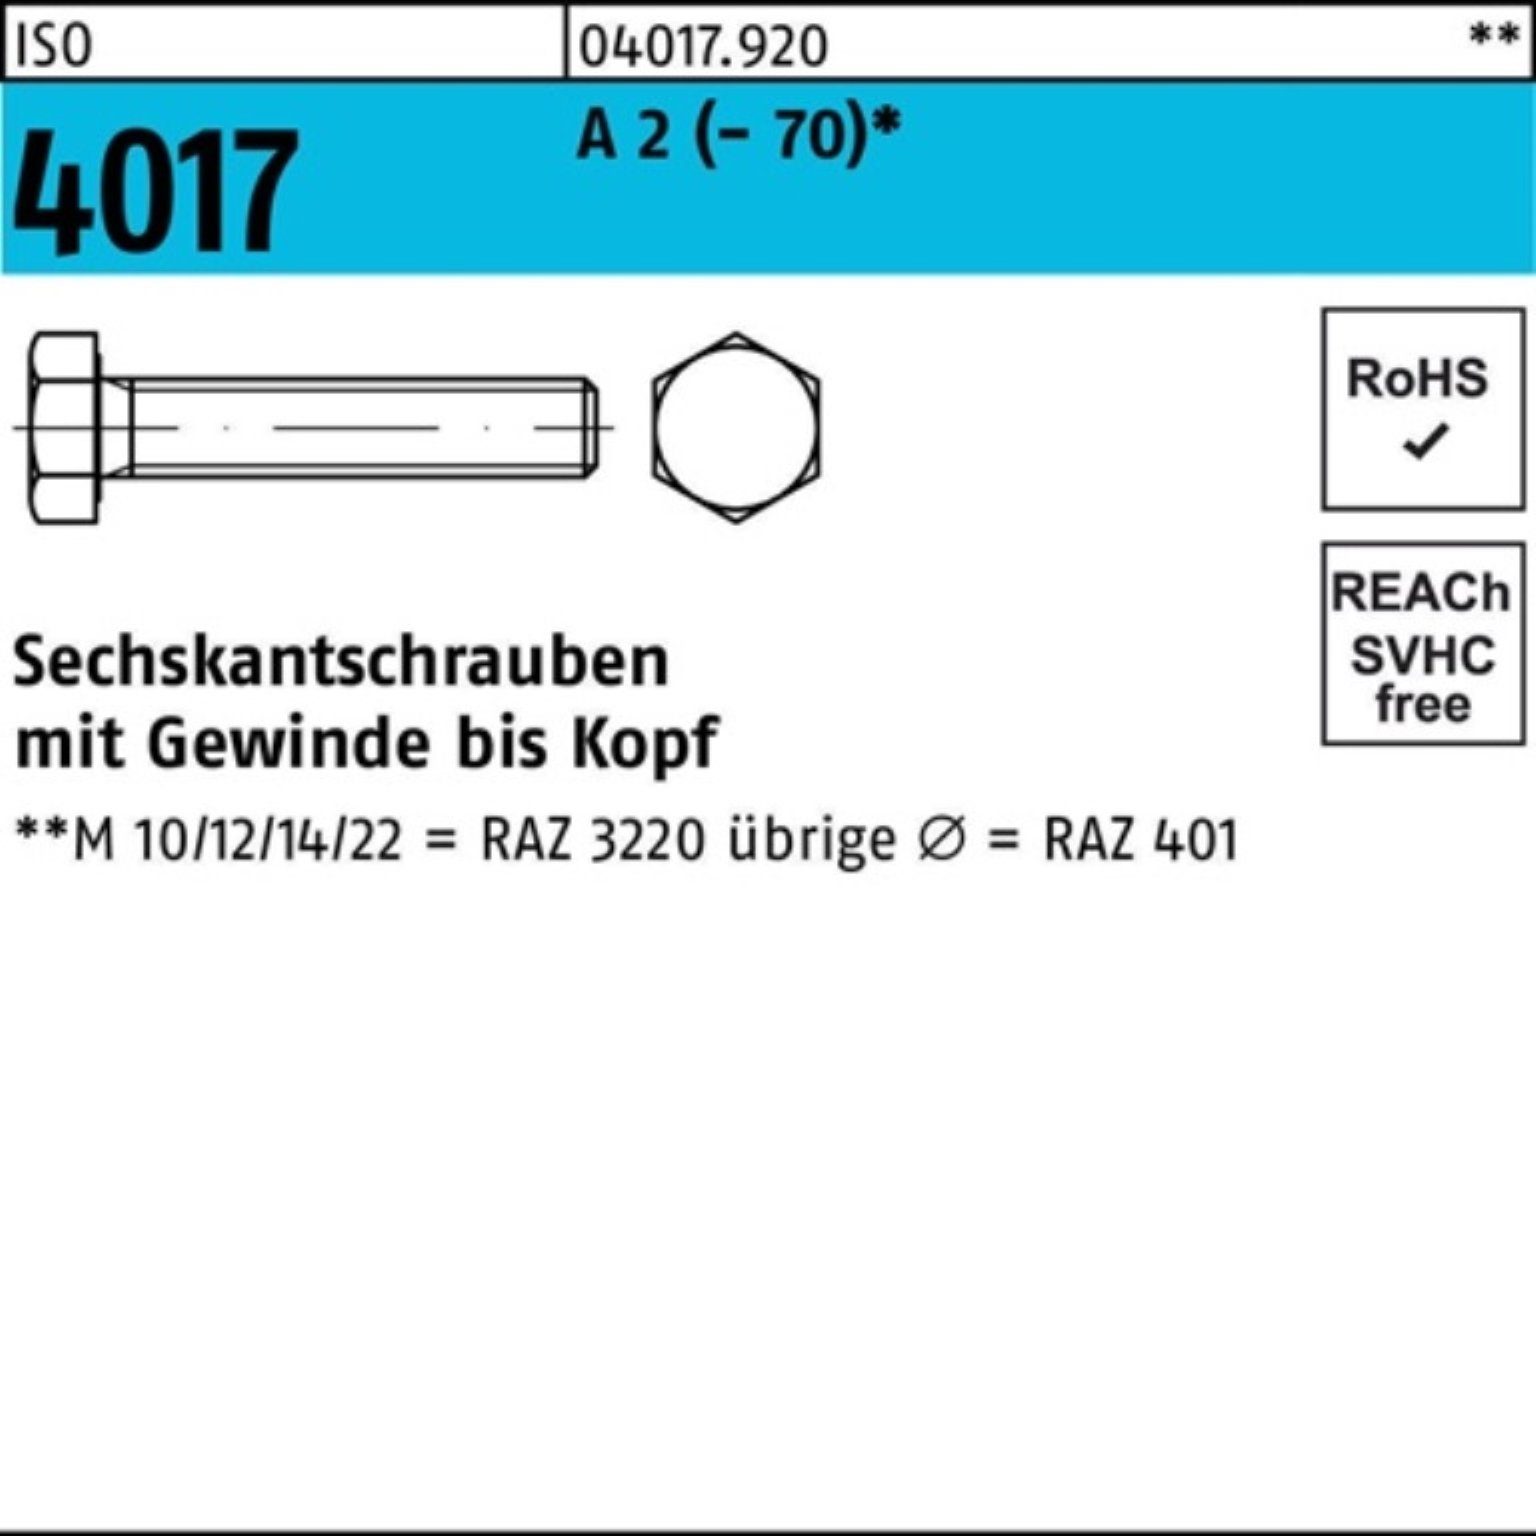 Bufab Sechskantschraube 100er VG 4017 Stück M33x ISO I (70) Pack 80 1 Sechskantschraube A 2